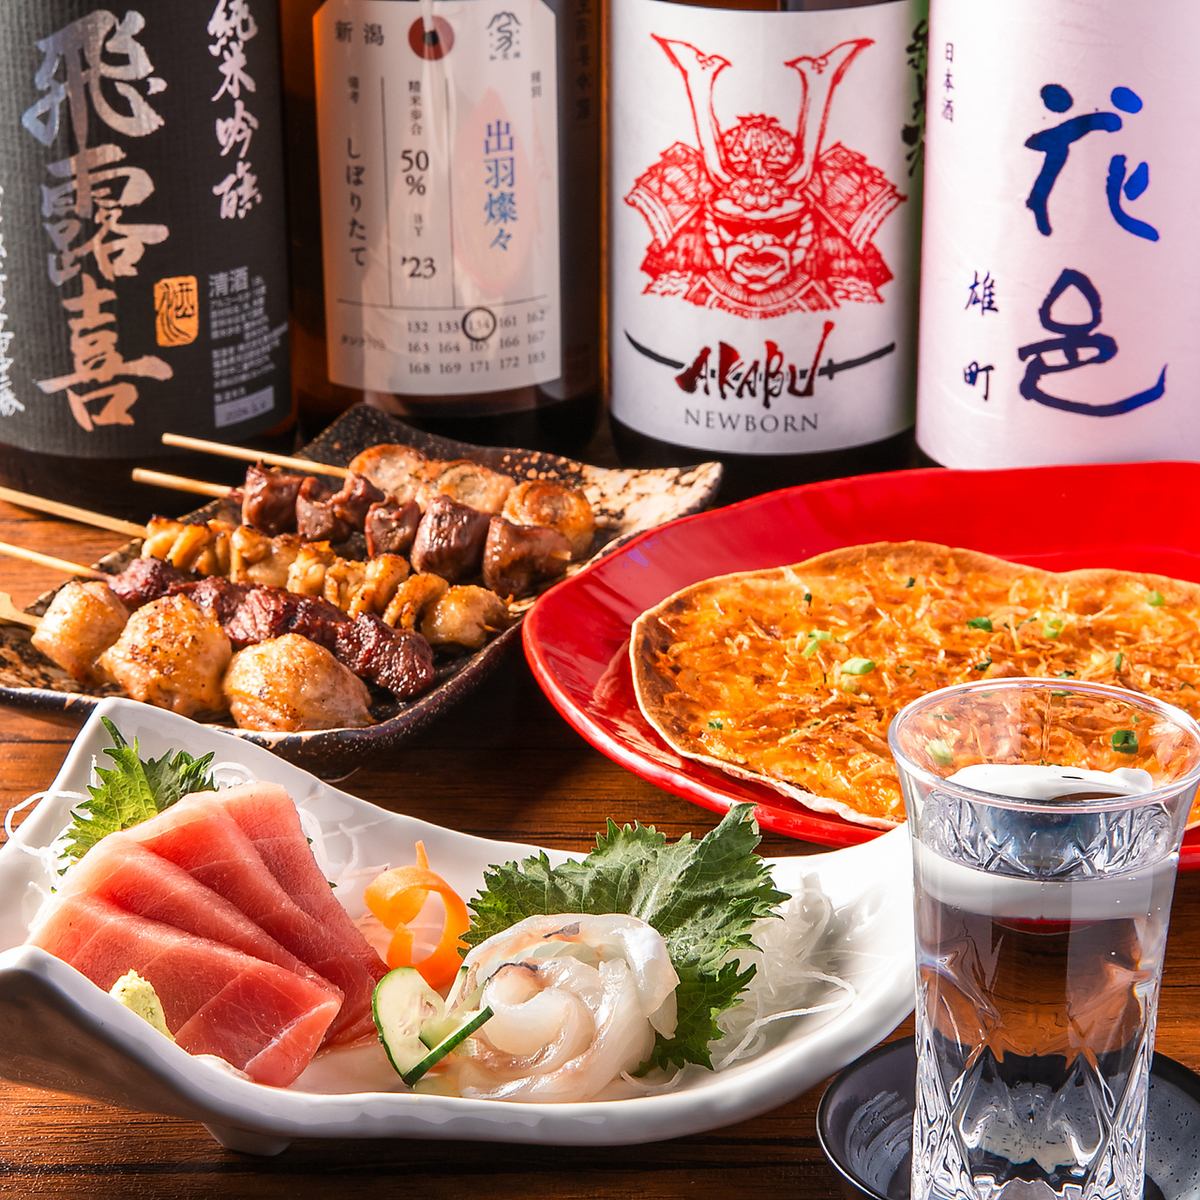 可以低价享用当季新鲜生鱼片和炭烤串的居酒屋☆套餐4,928日元起！